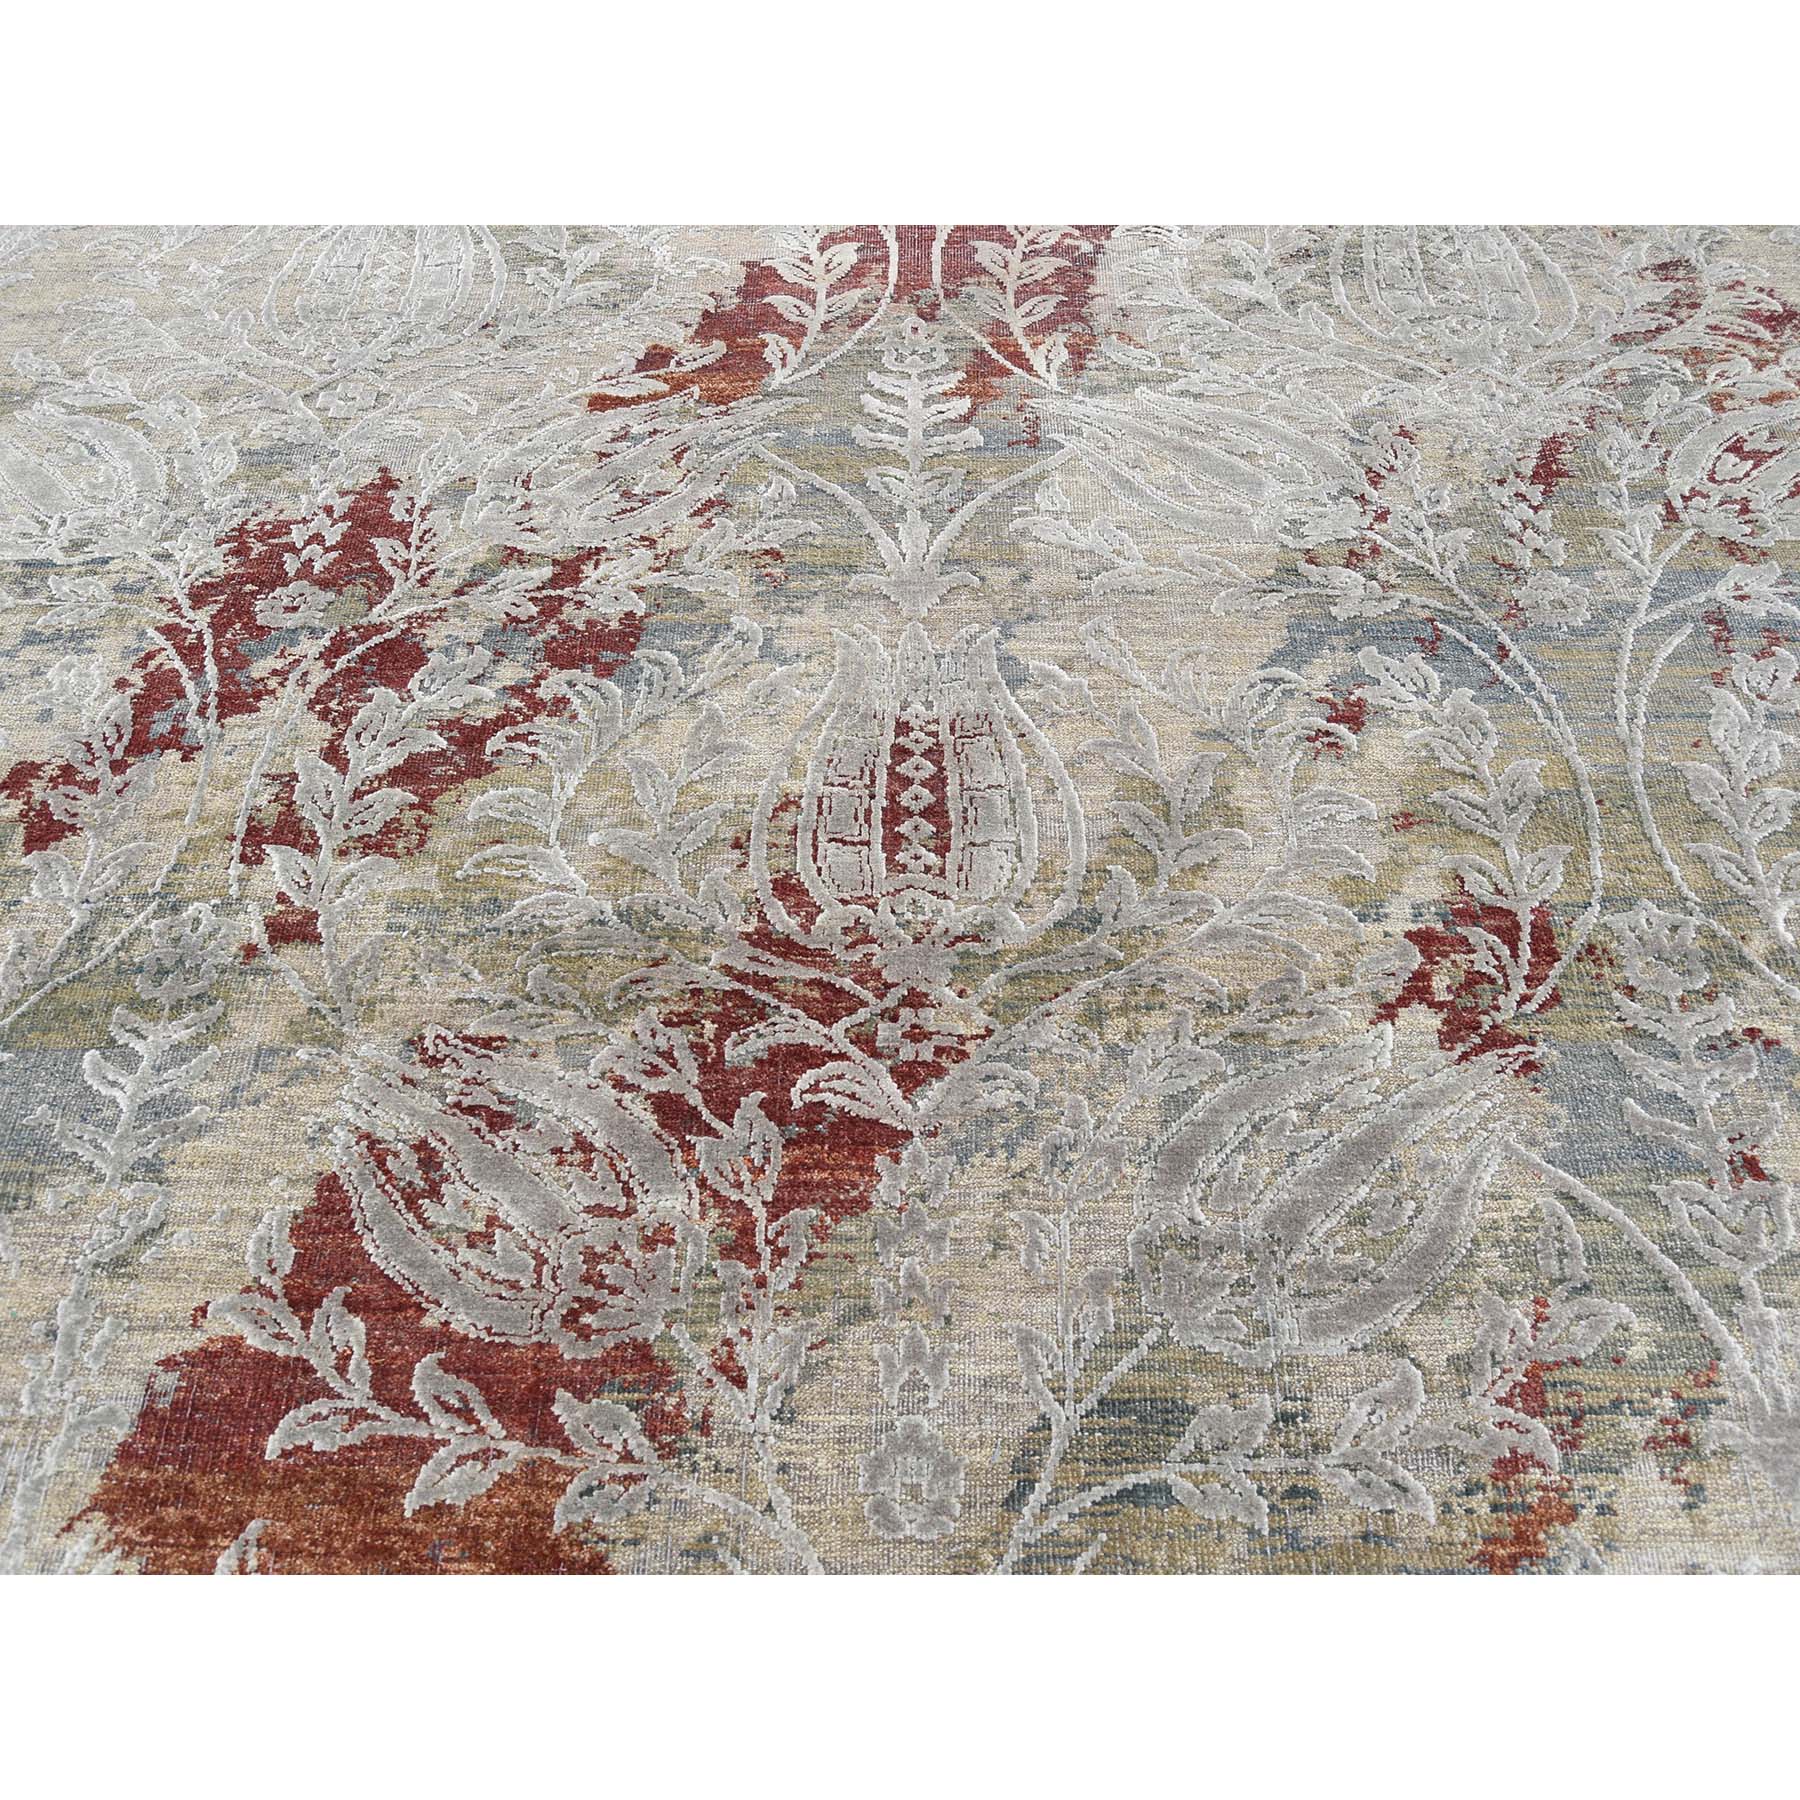 9-1 x12-2  Silk With Textured Wool Broken Tulip Design Hand-Knotted Oriental Rug 